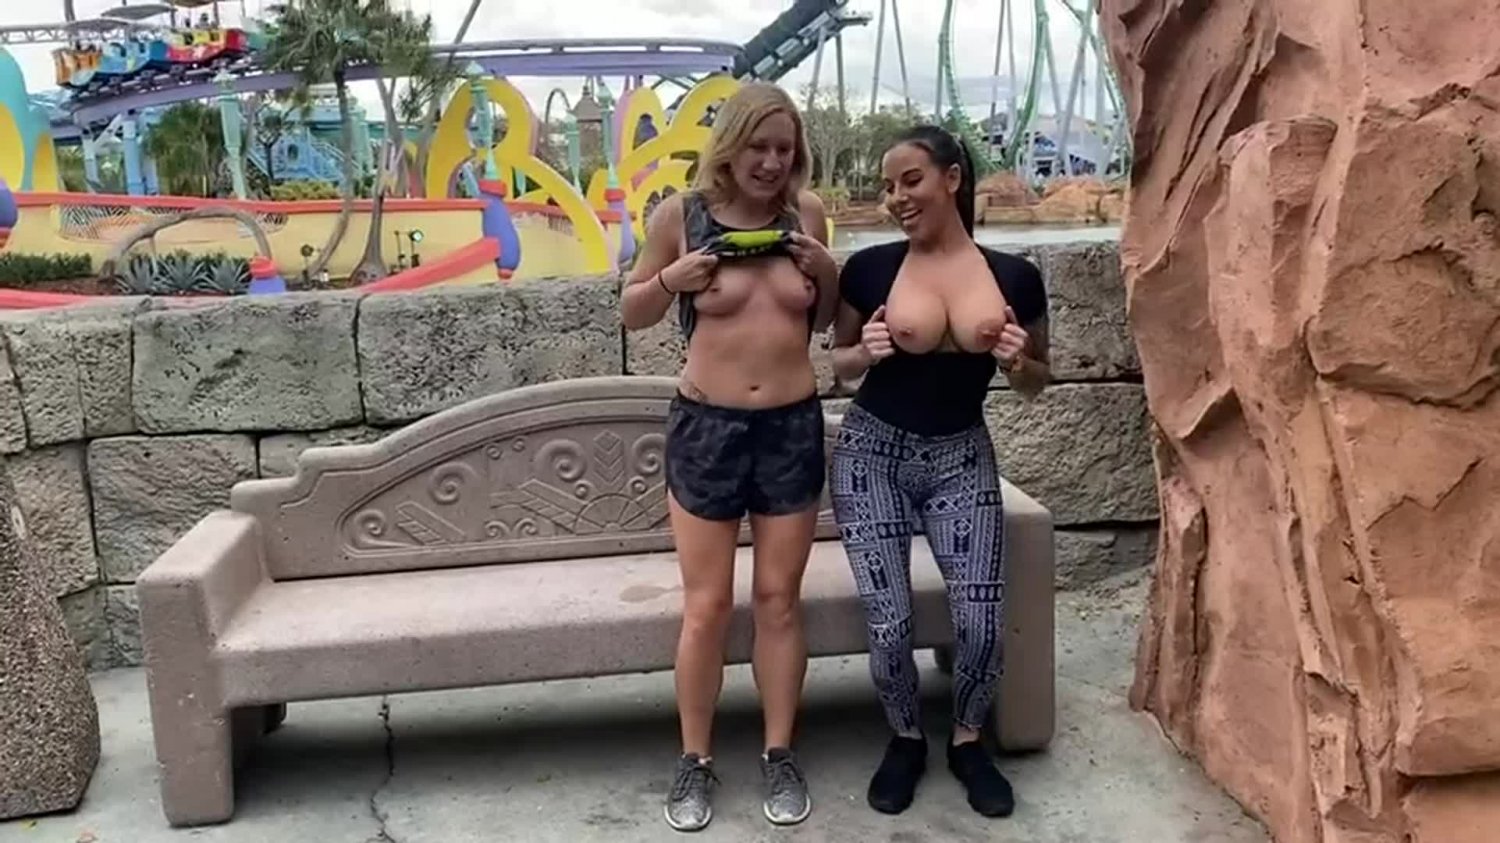 Amusement park tits